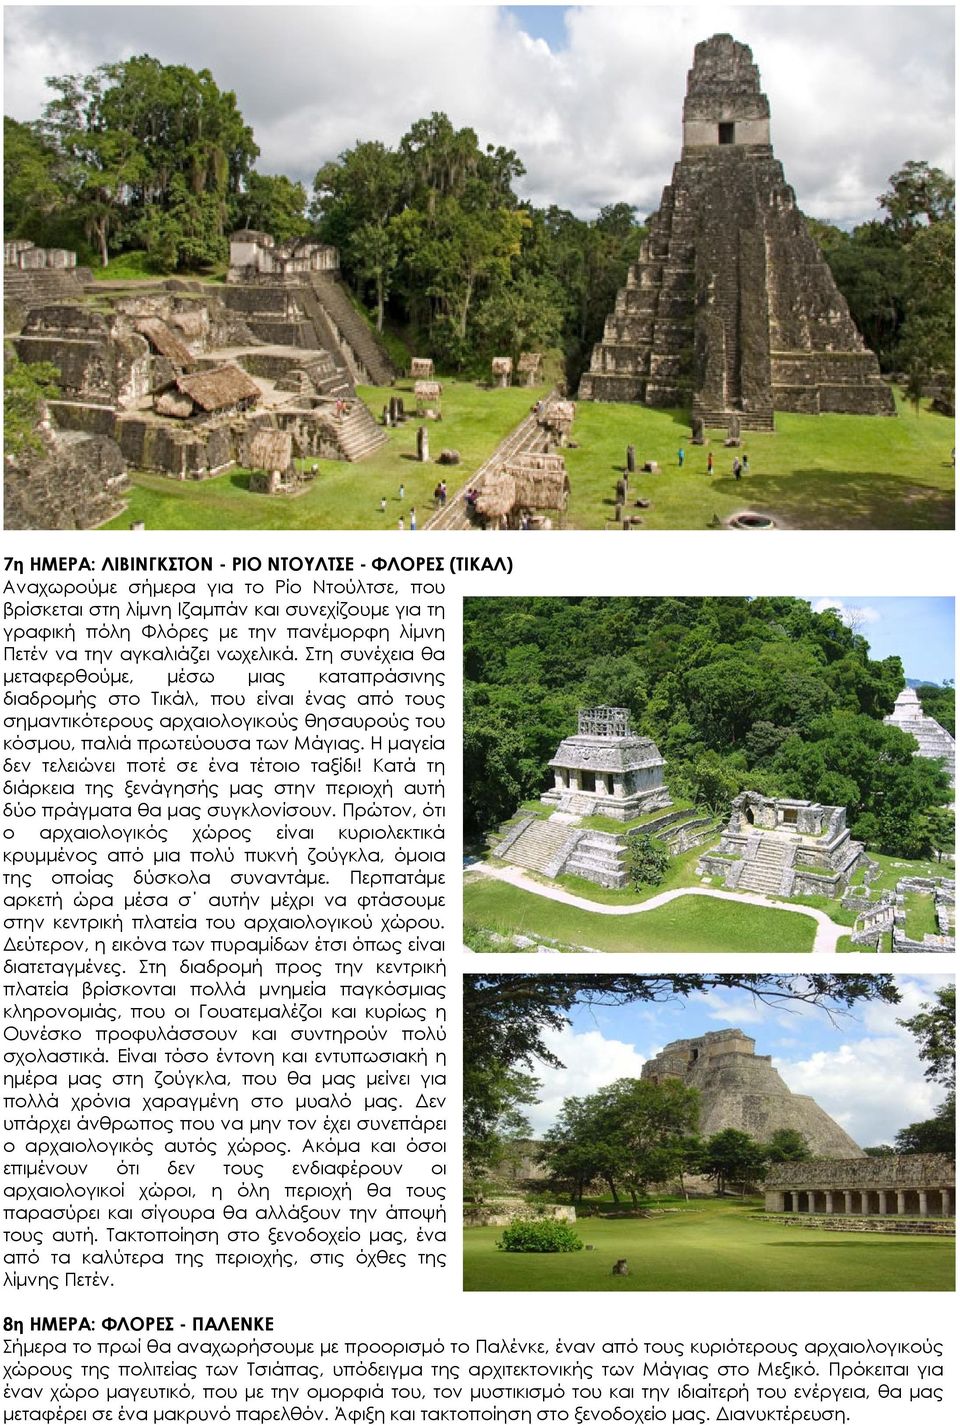 Στη συνέχεια θα μεταφερθούμε, μέσω μιας καταπράσινης διαδρομής στο Τικάλ, που είναι ένας από τους σημαντικότερους αρχαιολογικούς θησαυρούς του κόσμου, παλιά πρωτεύουσα των Μάγιας.